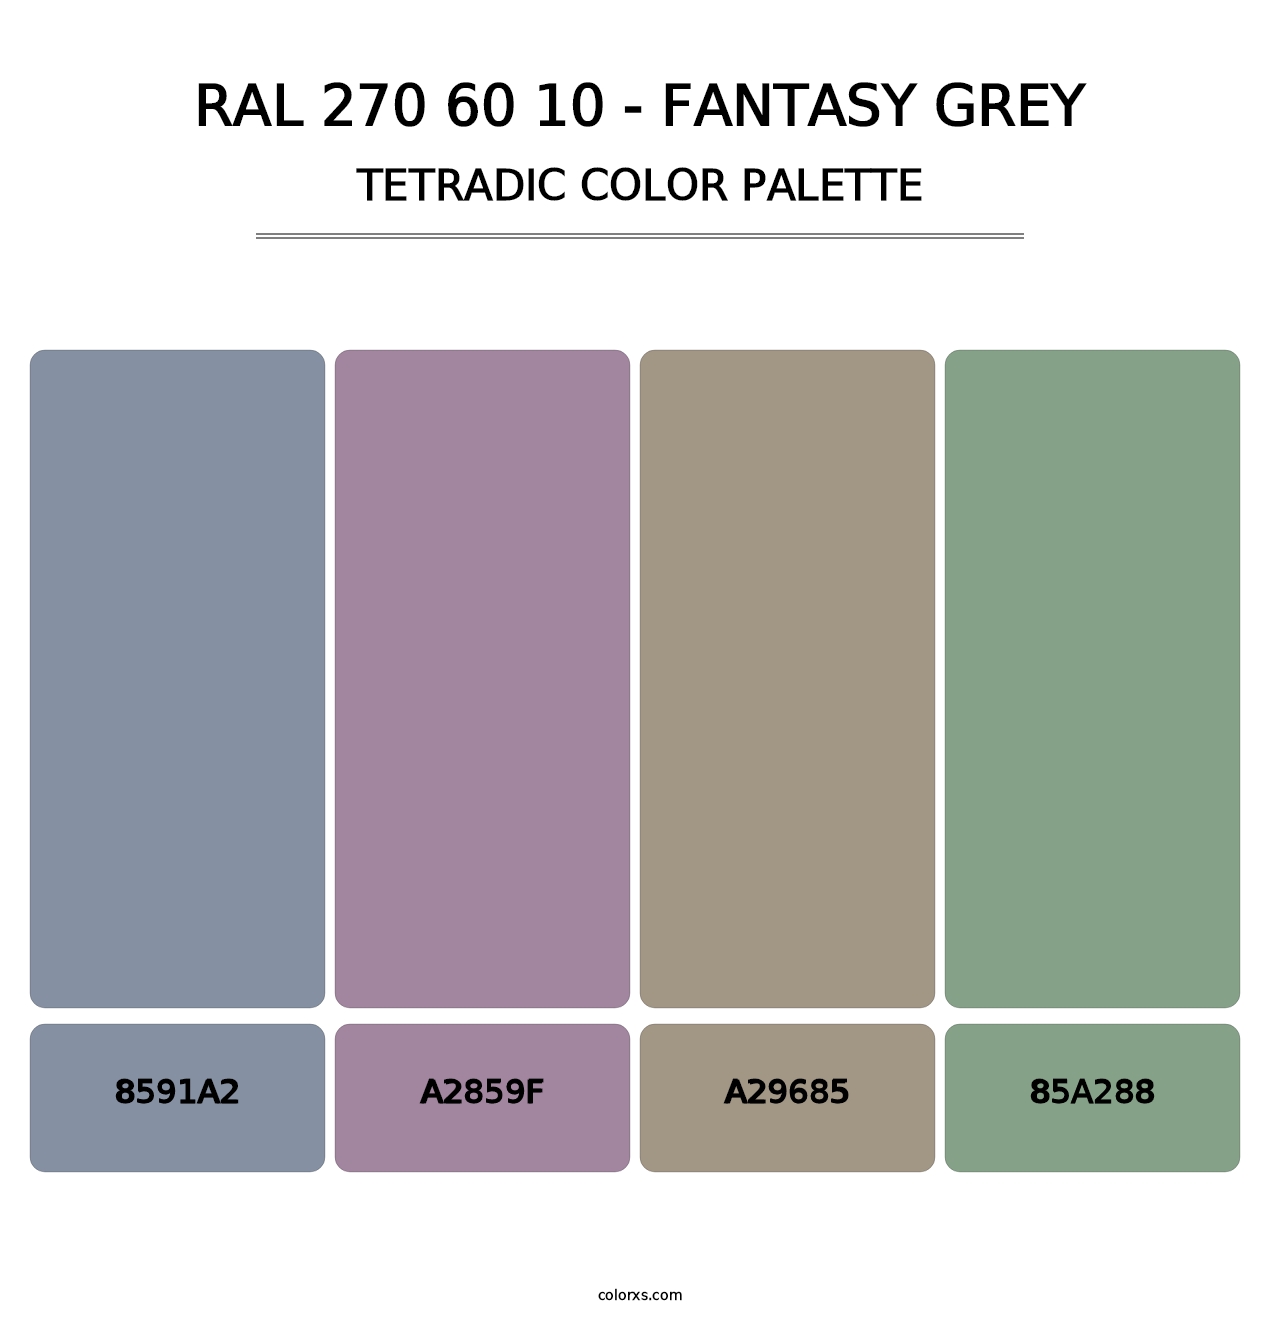 RAL 270 60 10 - Fantasy Grey - Tetradic Color Palette